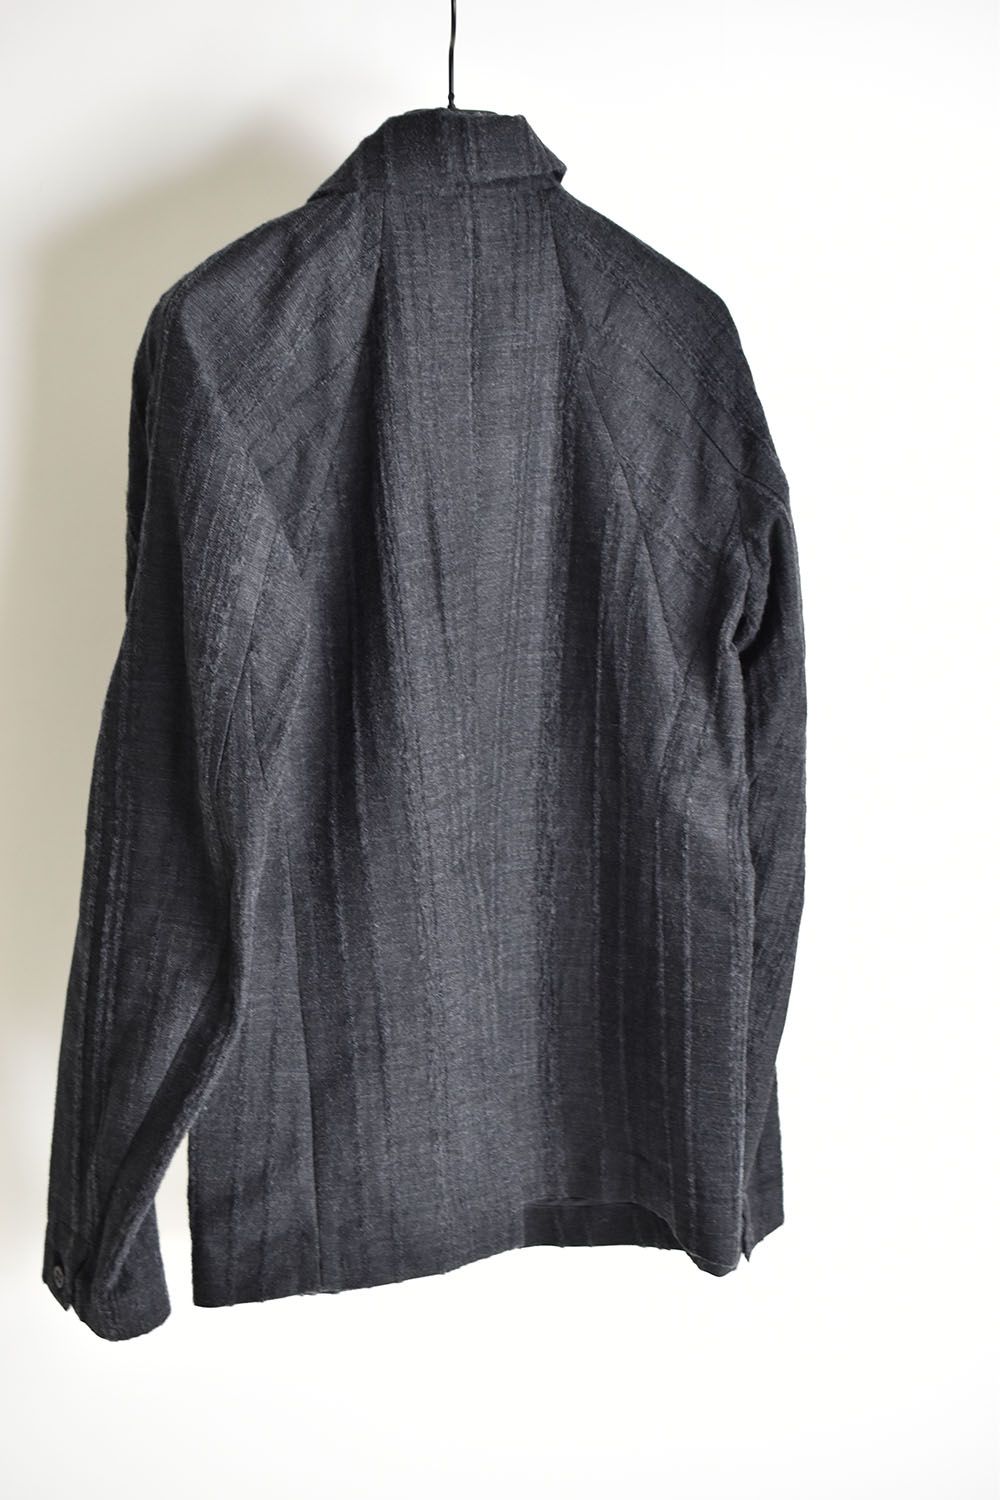 《ラスト1点!!》Wool Rayon Jacquard stripe jacket"Charcoal"/ ウール×レーヨン破れジャガードストライプジャケット"チャコール"